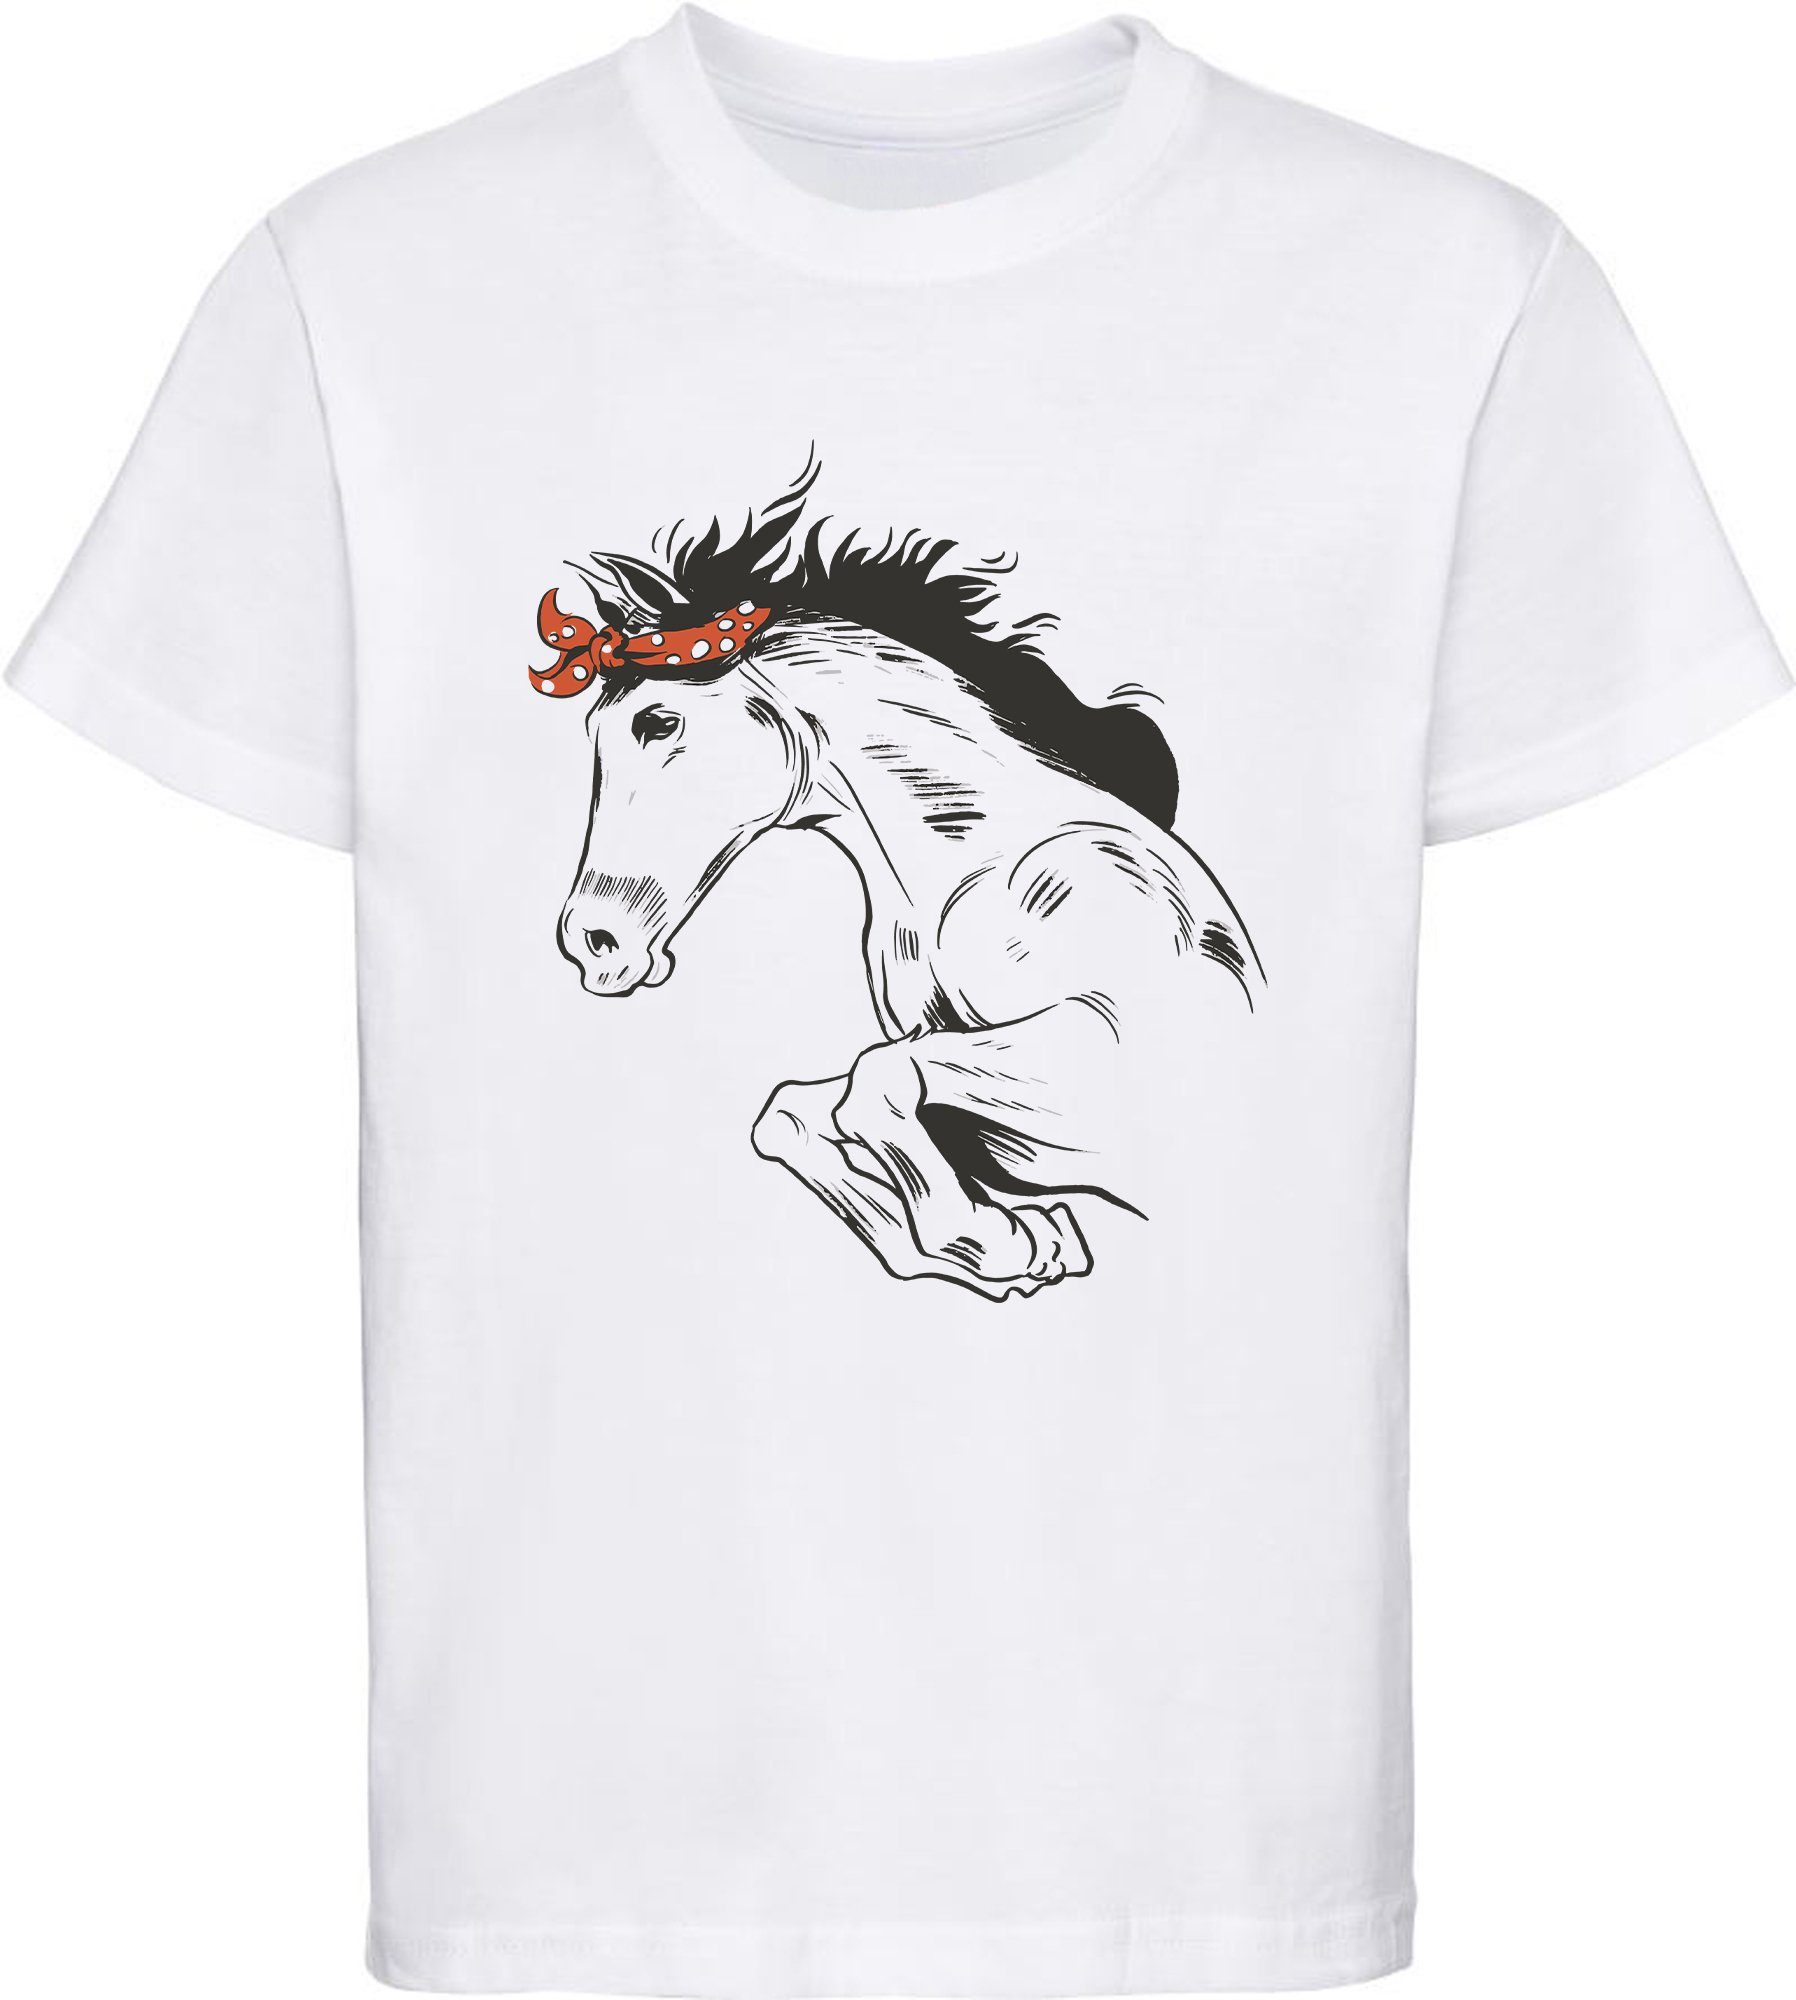 MyDesign24 Print-Shirt bedrucktes Pferde T-Shirt - Springendes Pferd mit  Kopftuch Baumwollshirt mit Aufdruck, i170